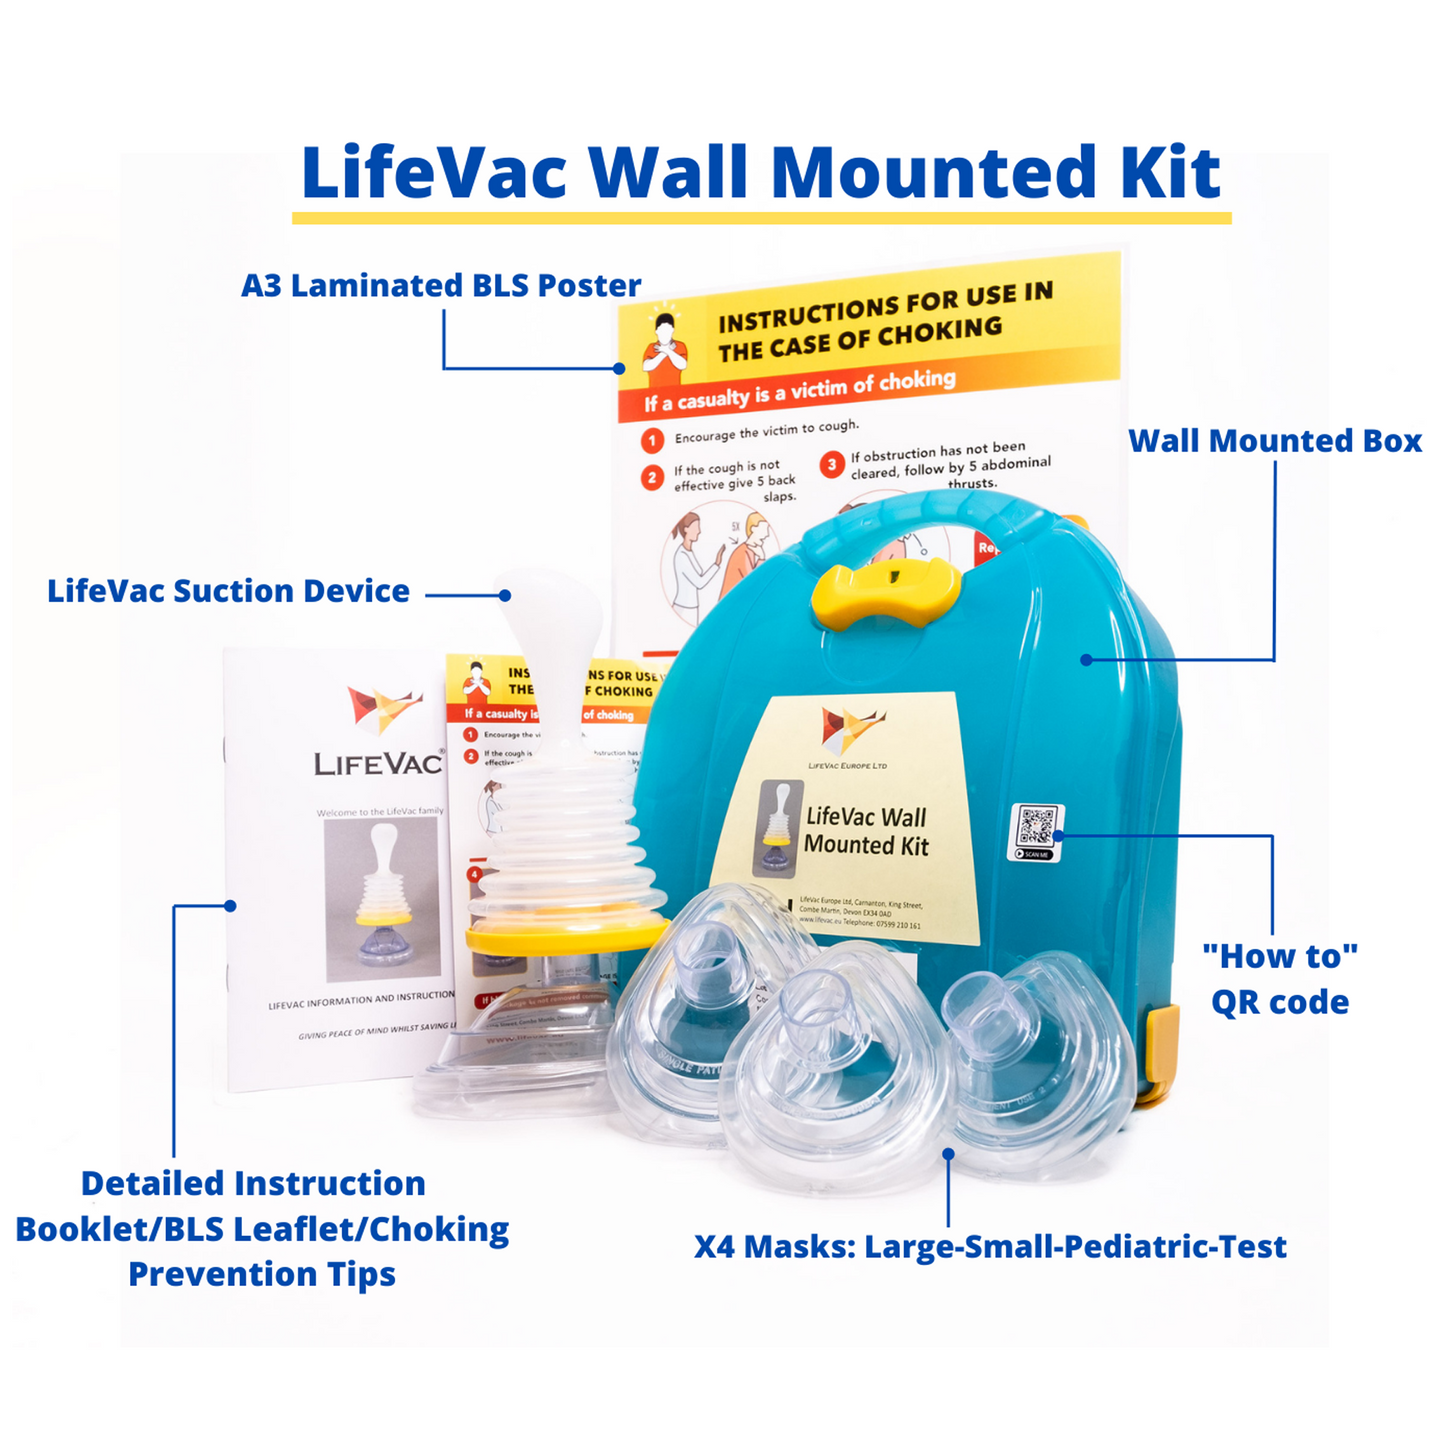 LifeVac Wall Mounted Kit